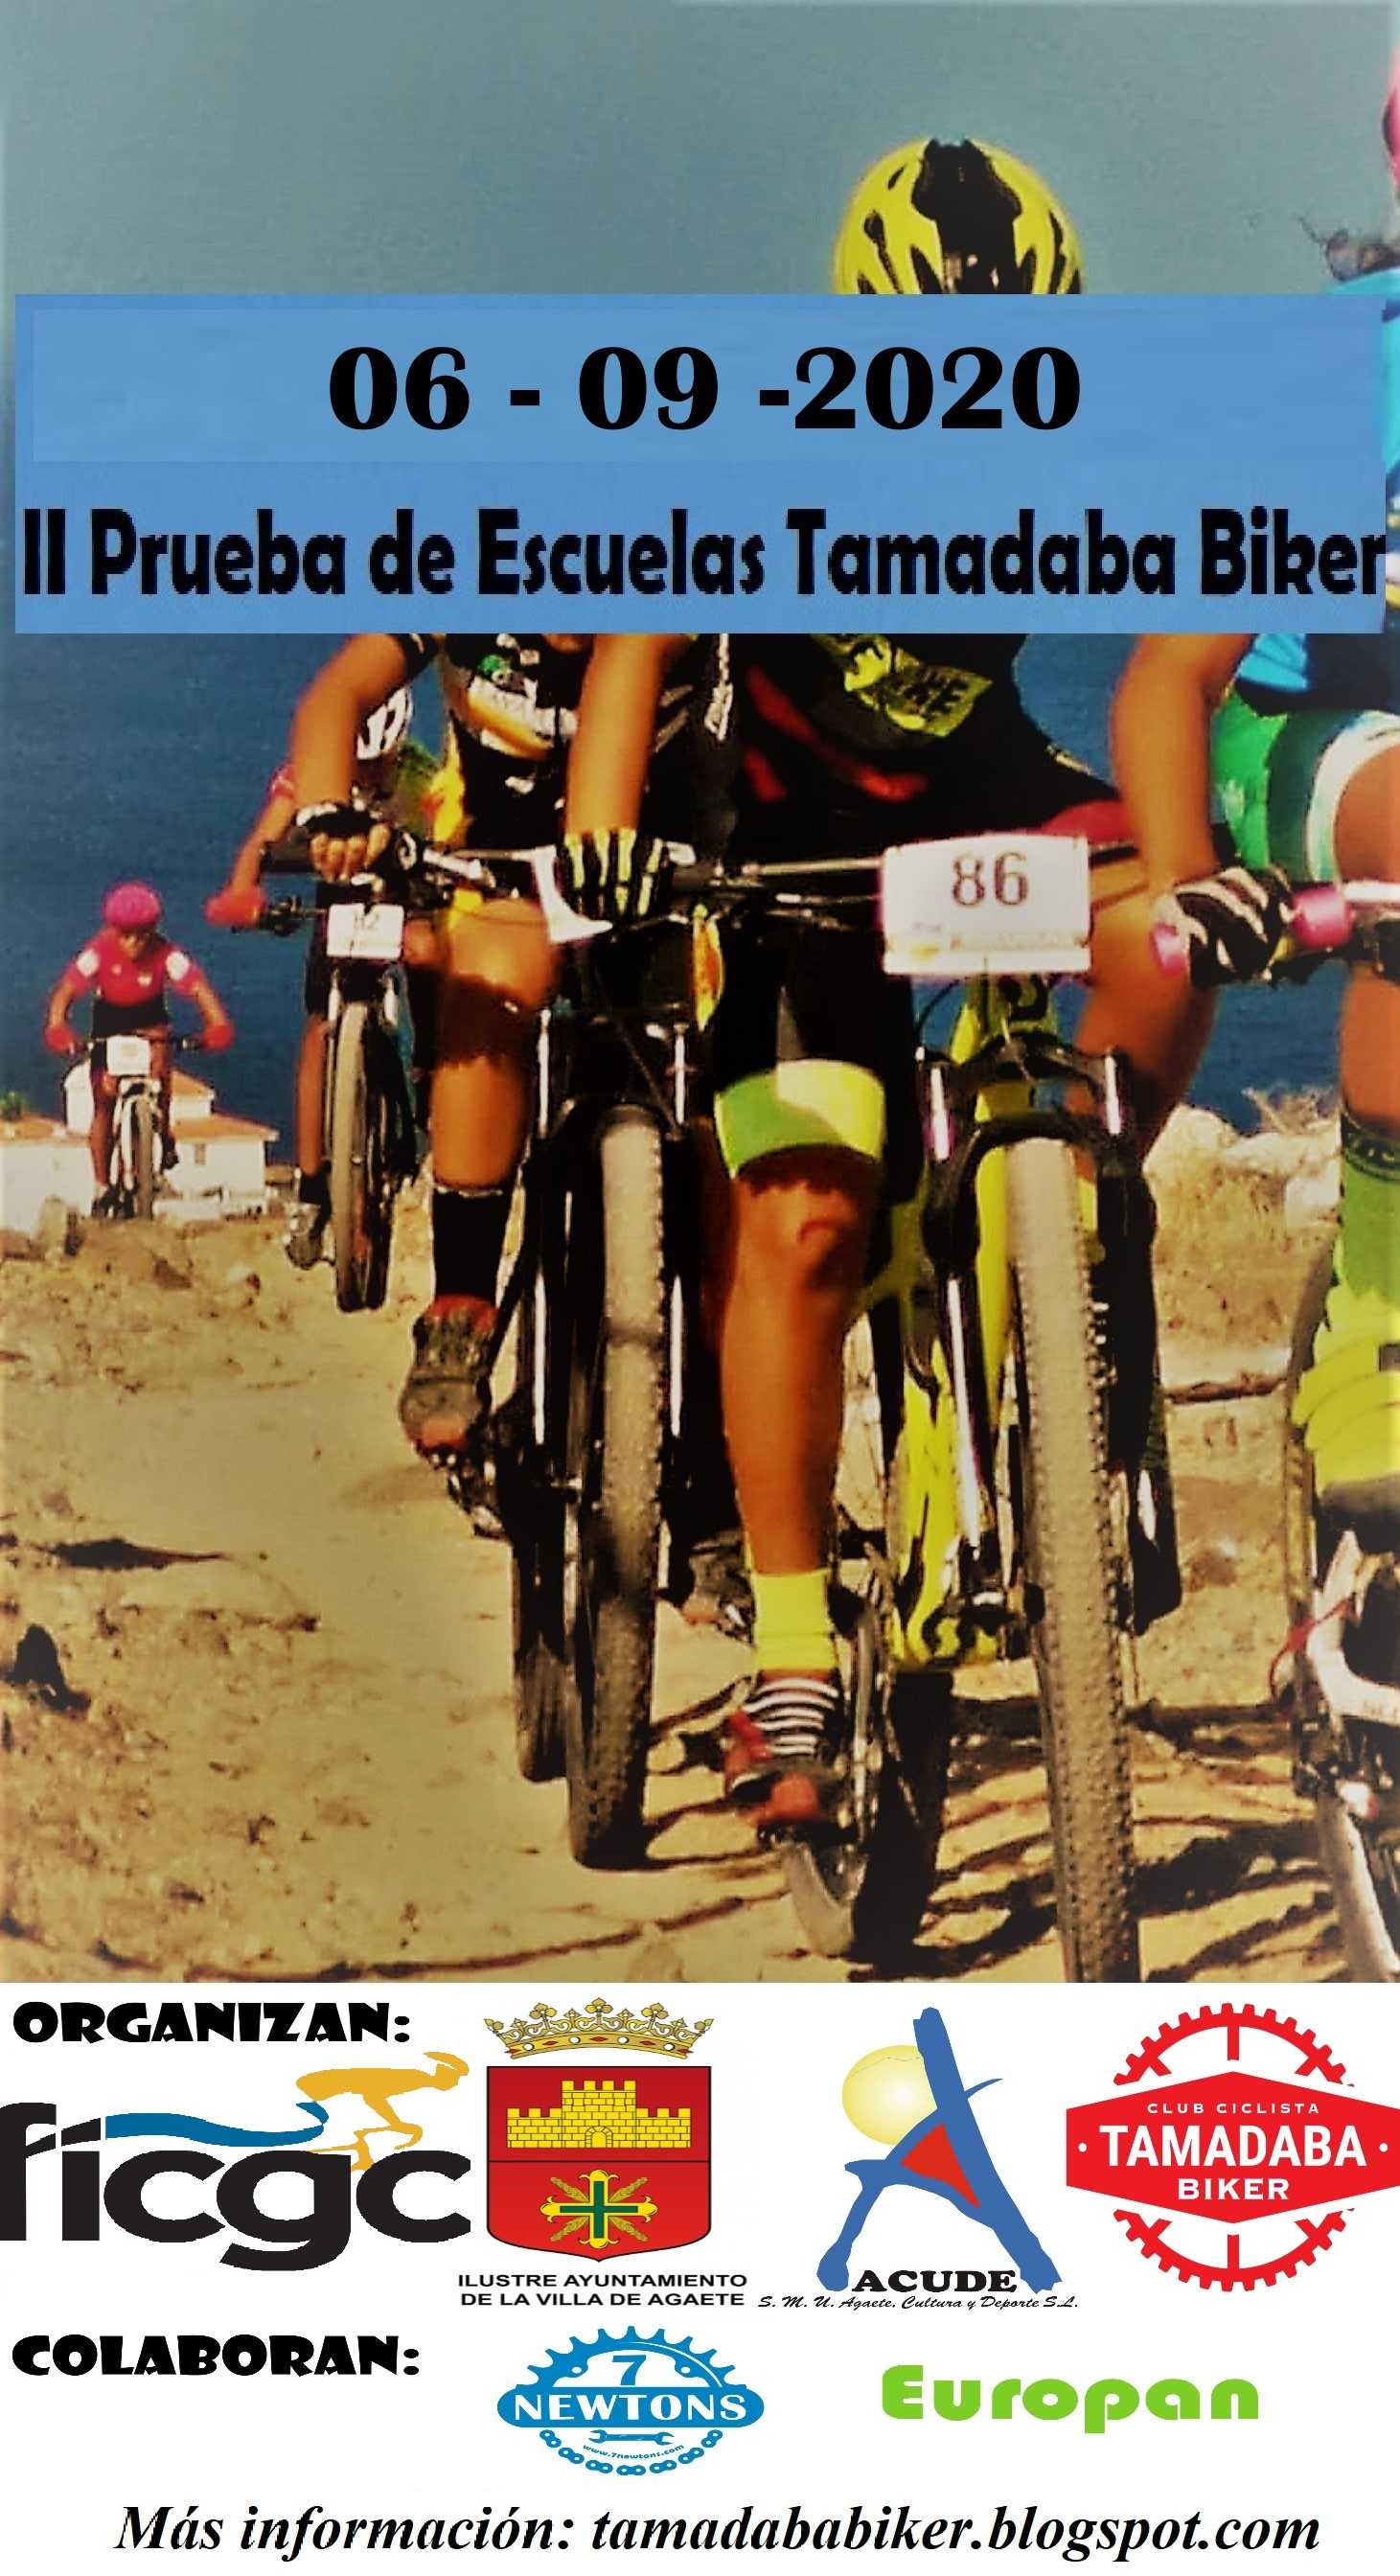 Nuevas Suspensiones de Pruebas  del  Calendario de la Federacion Canaria de Ciclismo